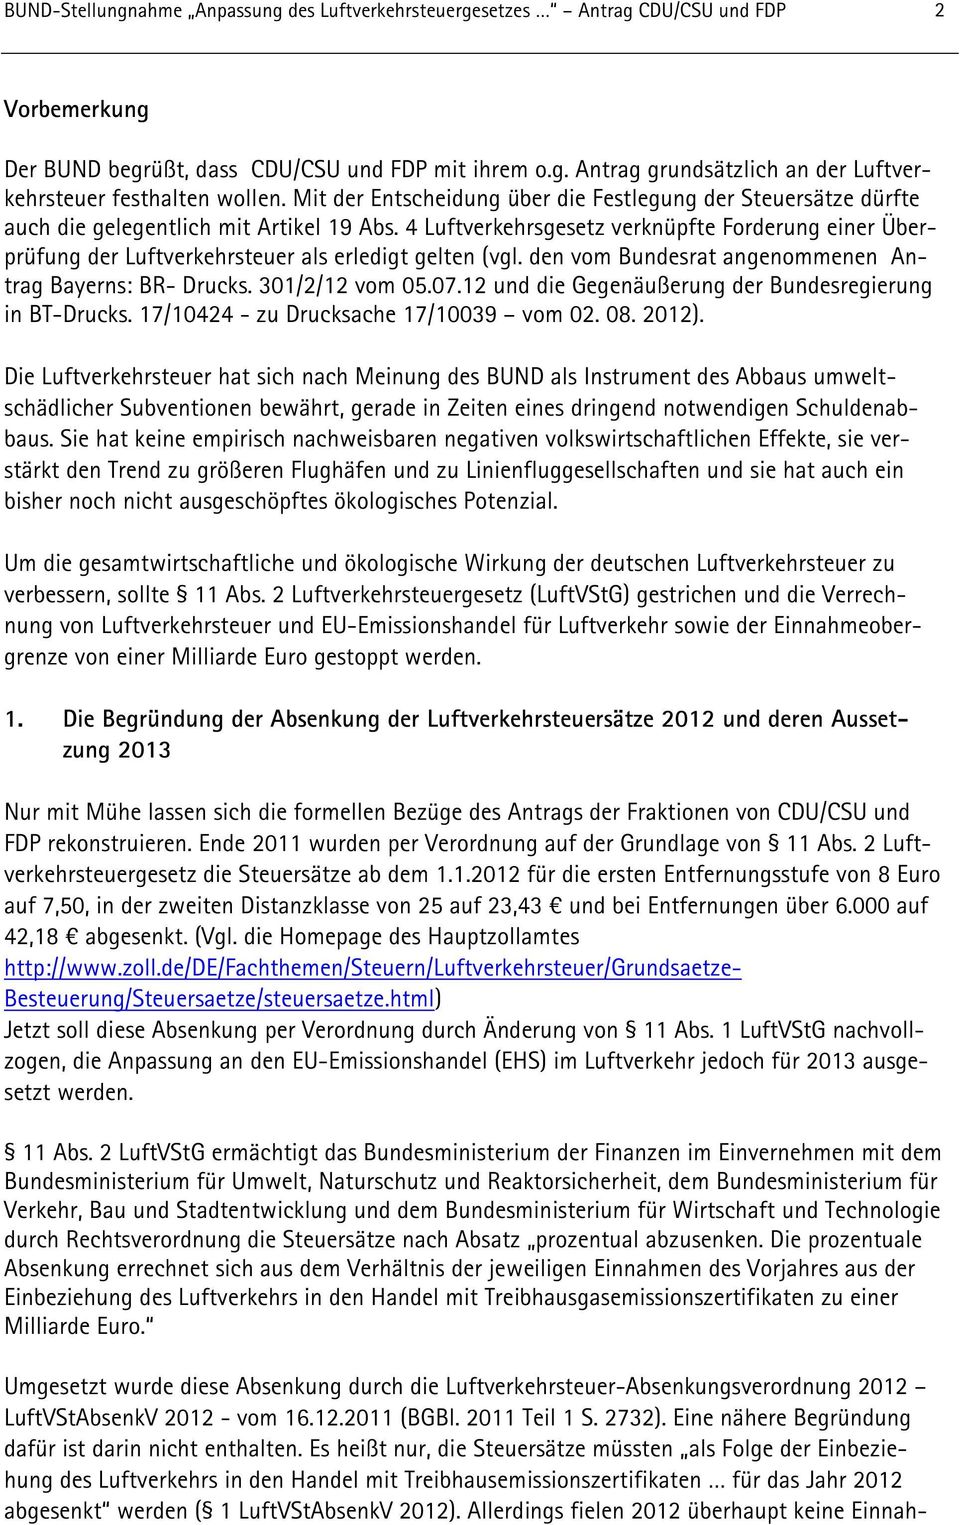 4 Luftverkehrsgesetz verknüpfte Forderung einer Überprüfung der Luftverkehrsteuer als erledigt gelten (vgl. den vom Bundesrat angenommenen Antrag Bayerns: BR- Drucks. 301/2/12 vom 05.07.